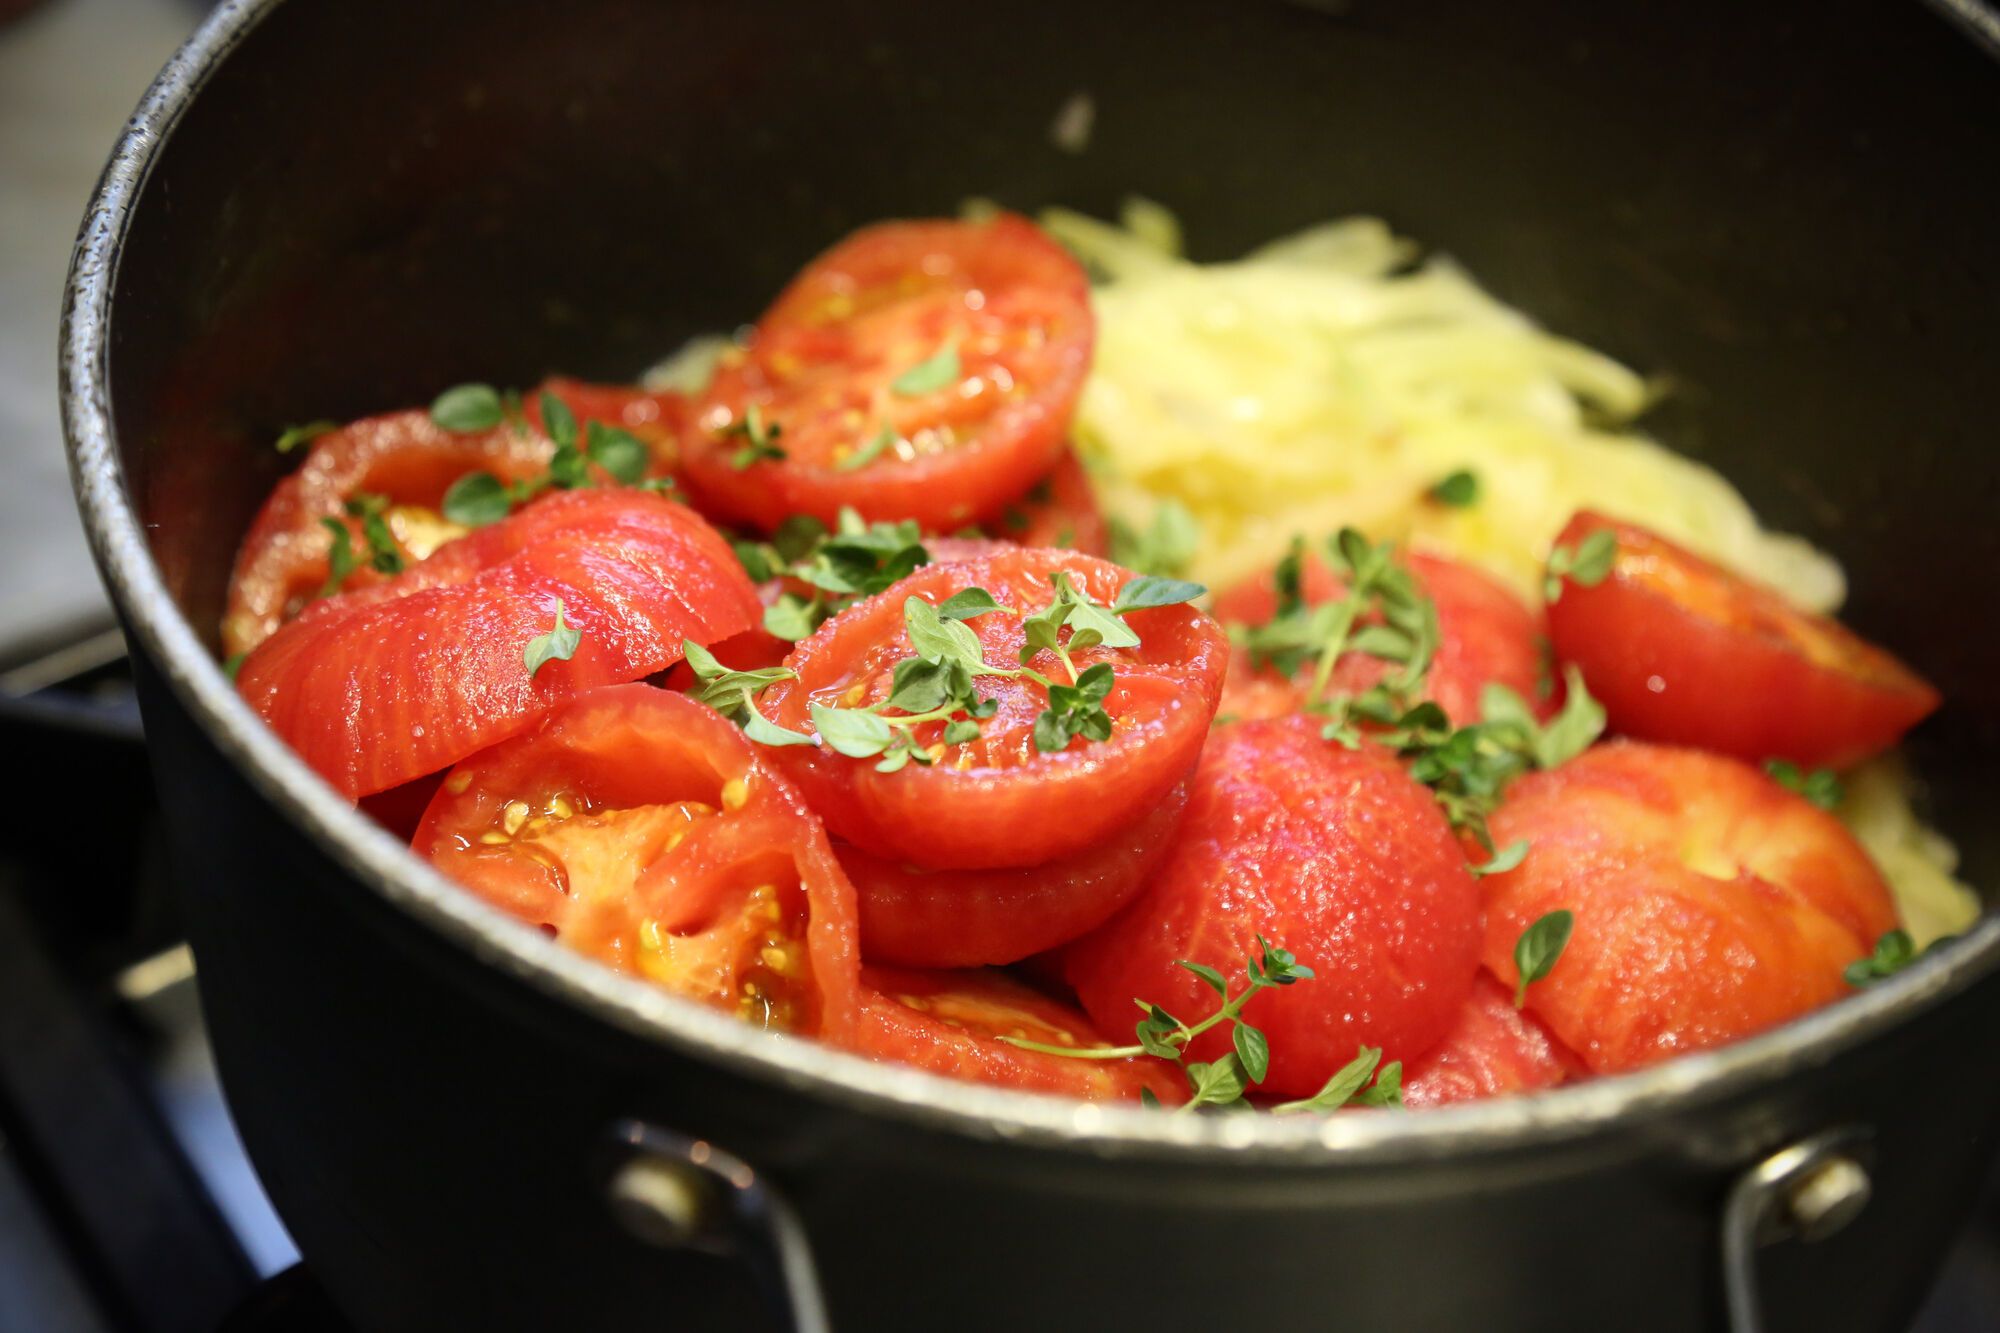 מביאים לרתיחה איטית וממשיכים לבשל עד שהעגבניות מתחילות להתרכך